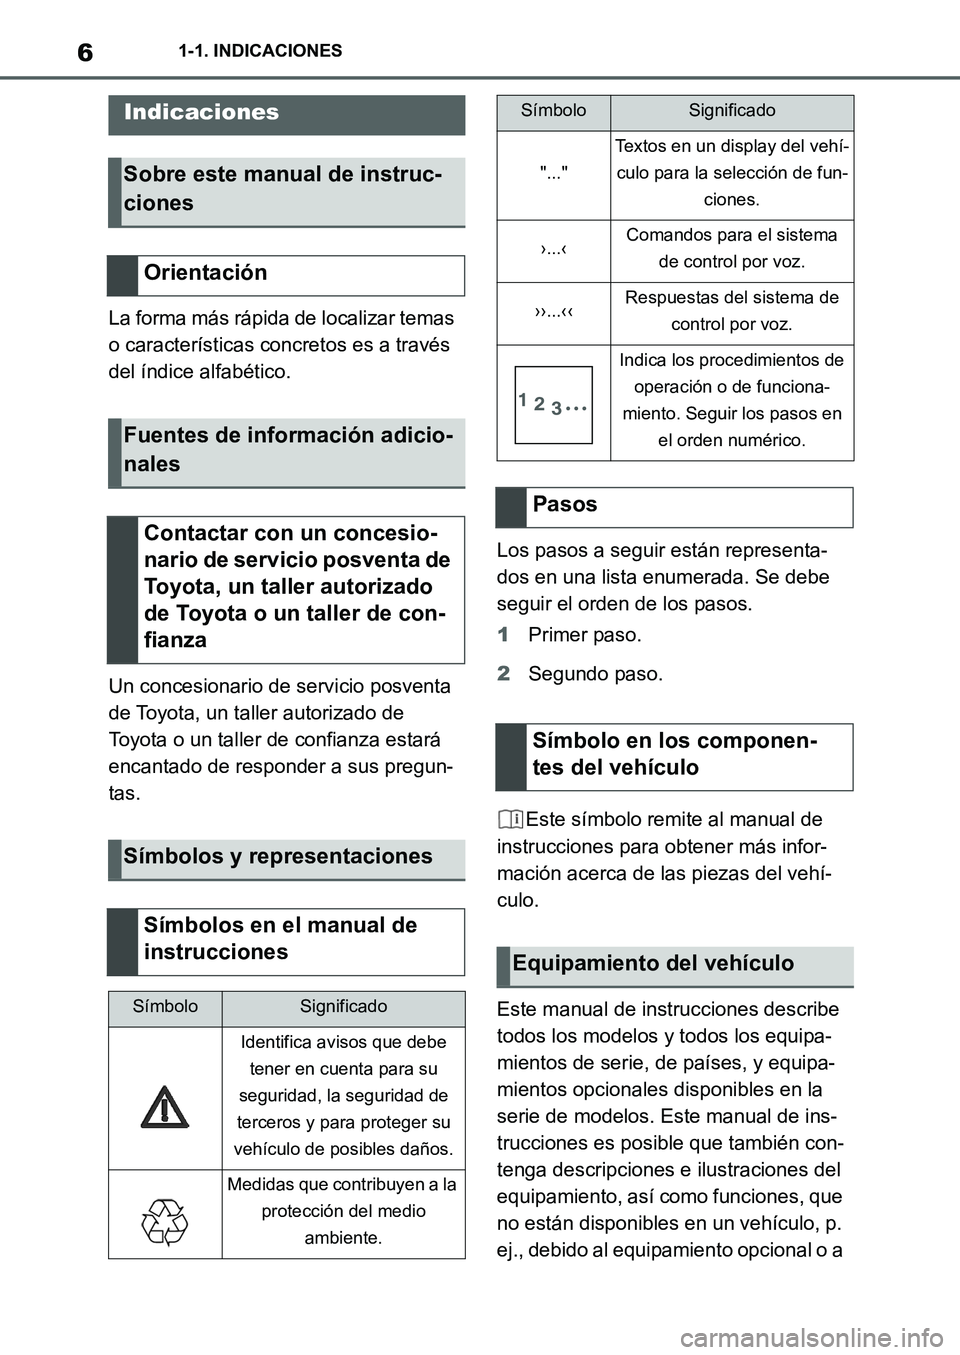 TOYOTA SUPRA 2022  Manuale de Empleo (in Spanish) 61-1. INDICACIONES
1-1.INDICACIONES
La forma más rápida de localizar temas 
o características concretos es a través 
del índice alfabético.
Un concesionario de servicio posventa 
de Toyota, un t